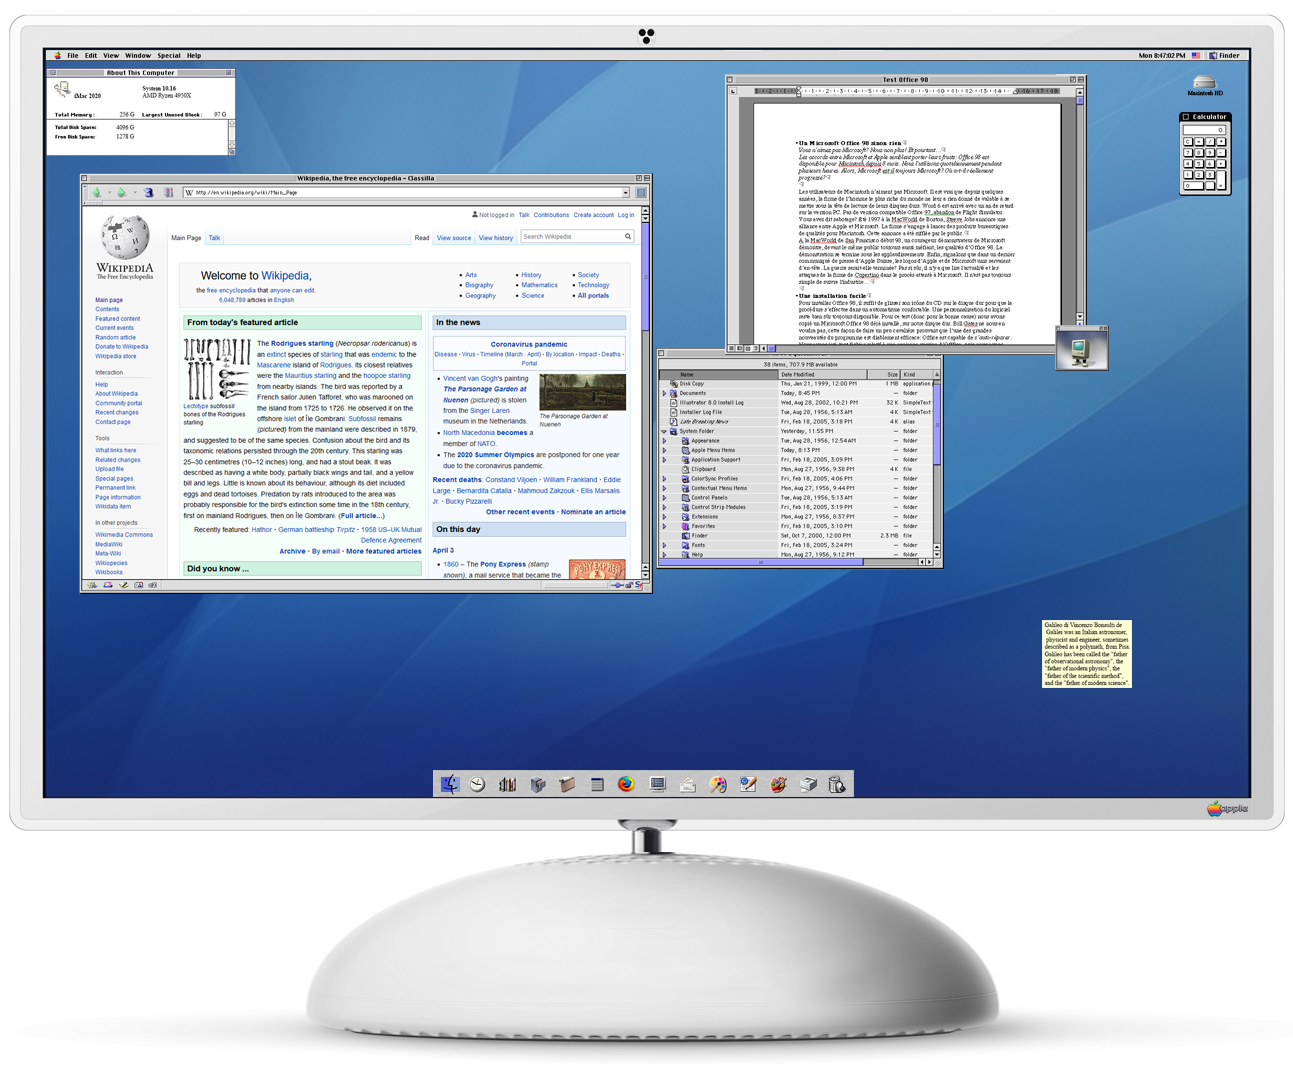 iMac G4 - Wikipedia